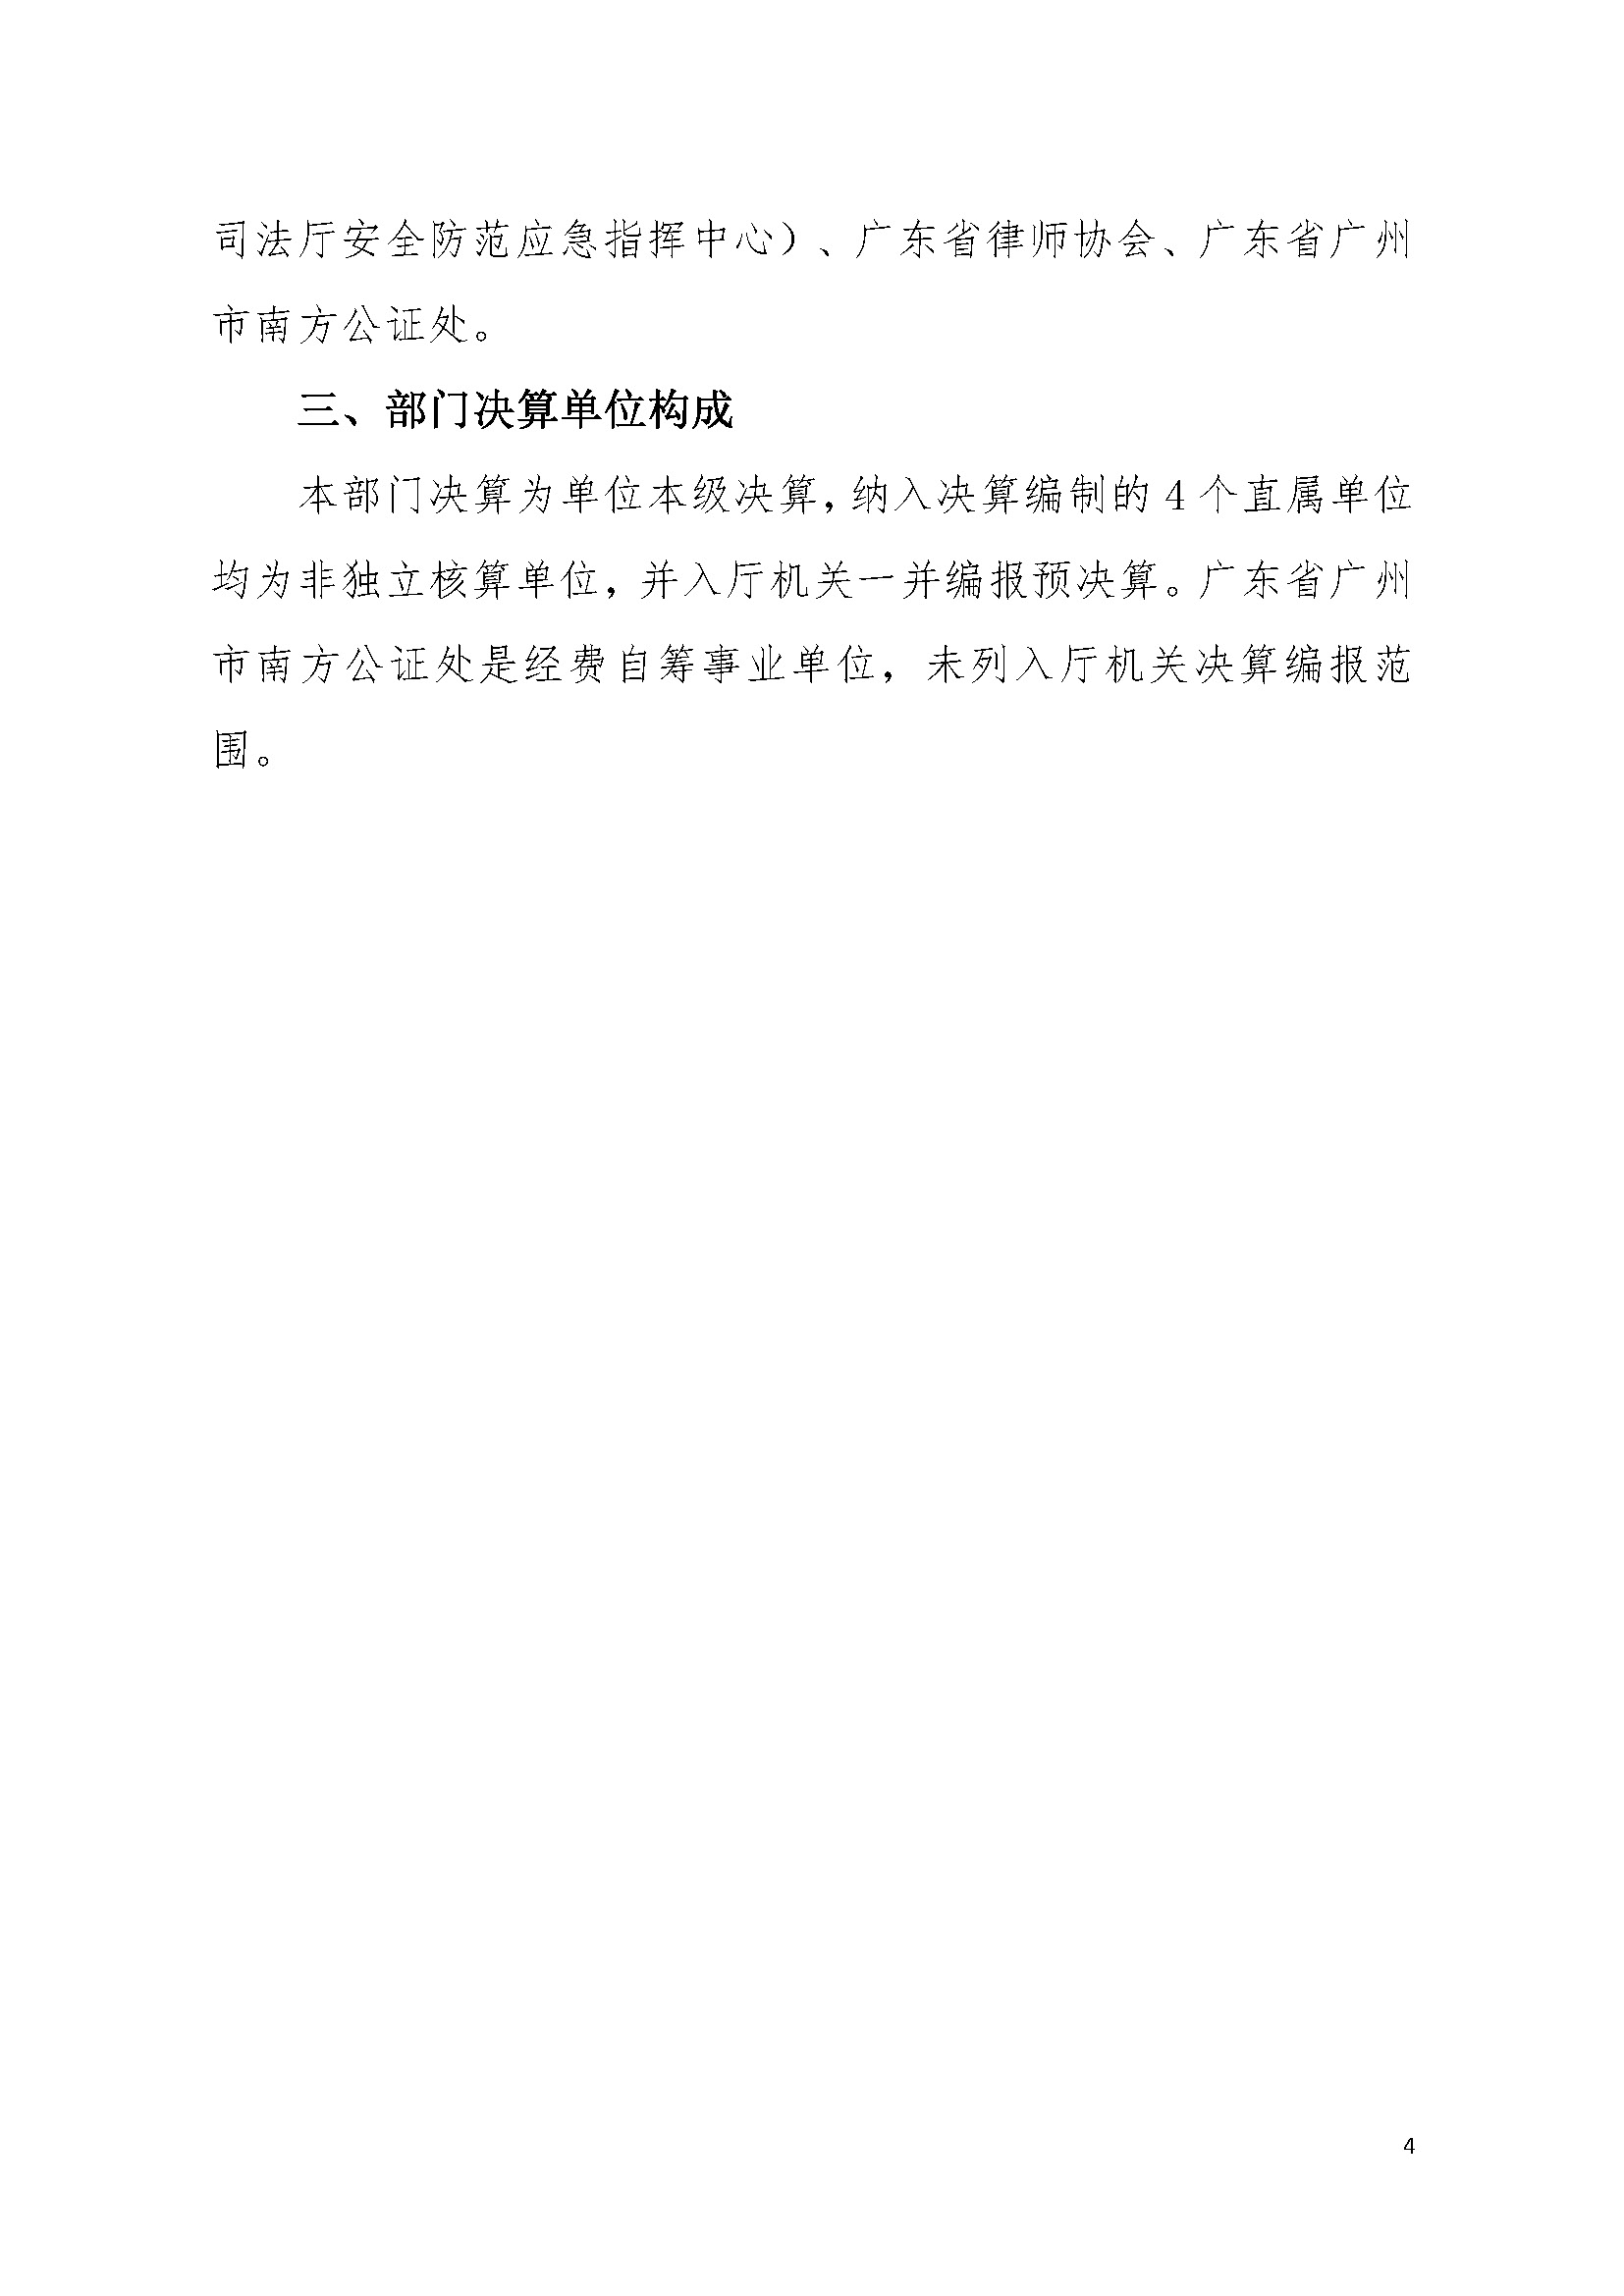 2022年度广东省司法厅部门决算__页面_04.jpg